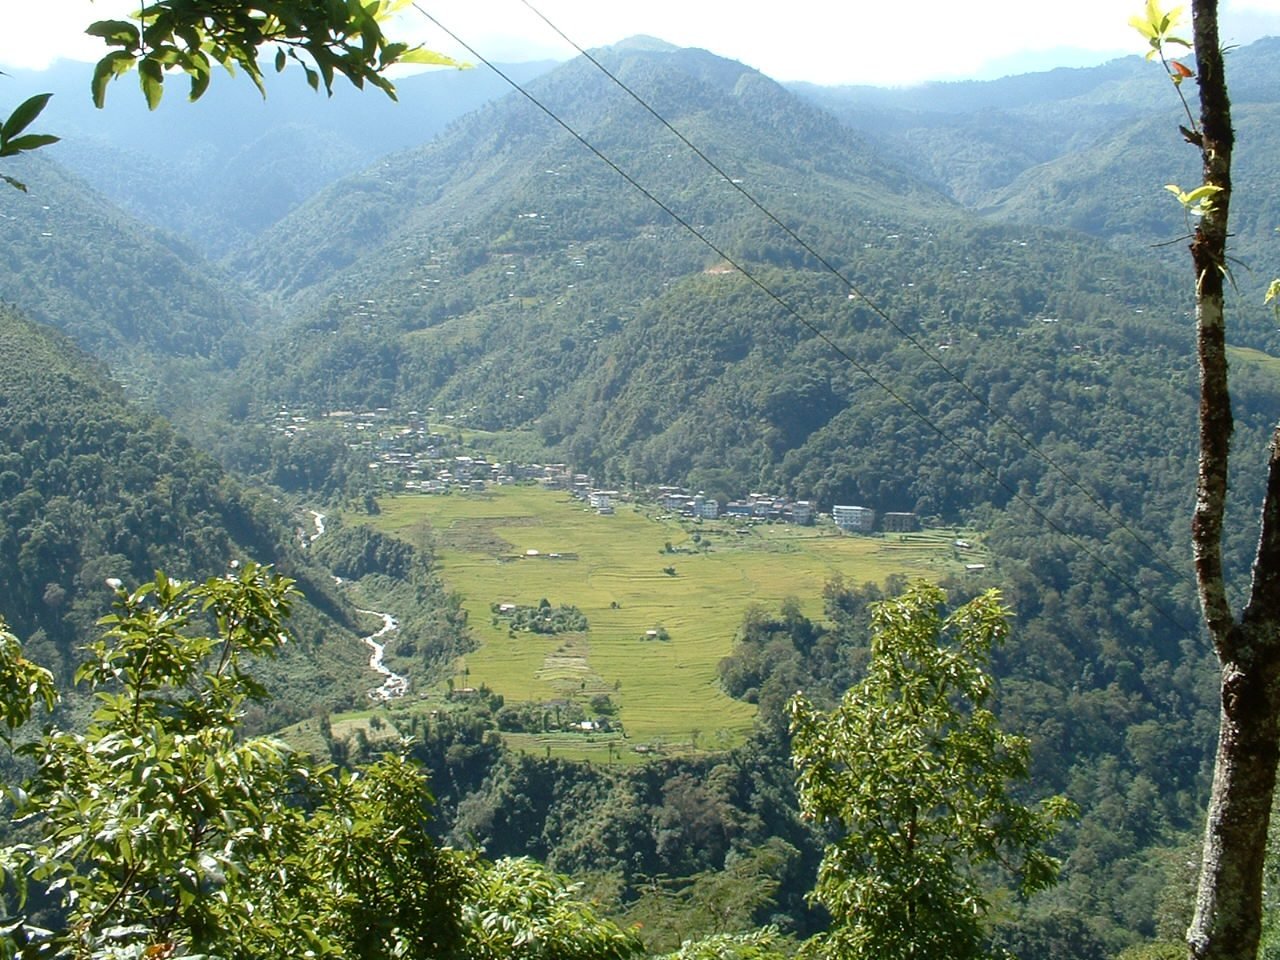 Dentam Valley, West Sikkim